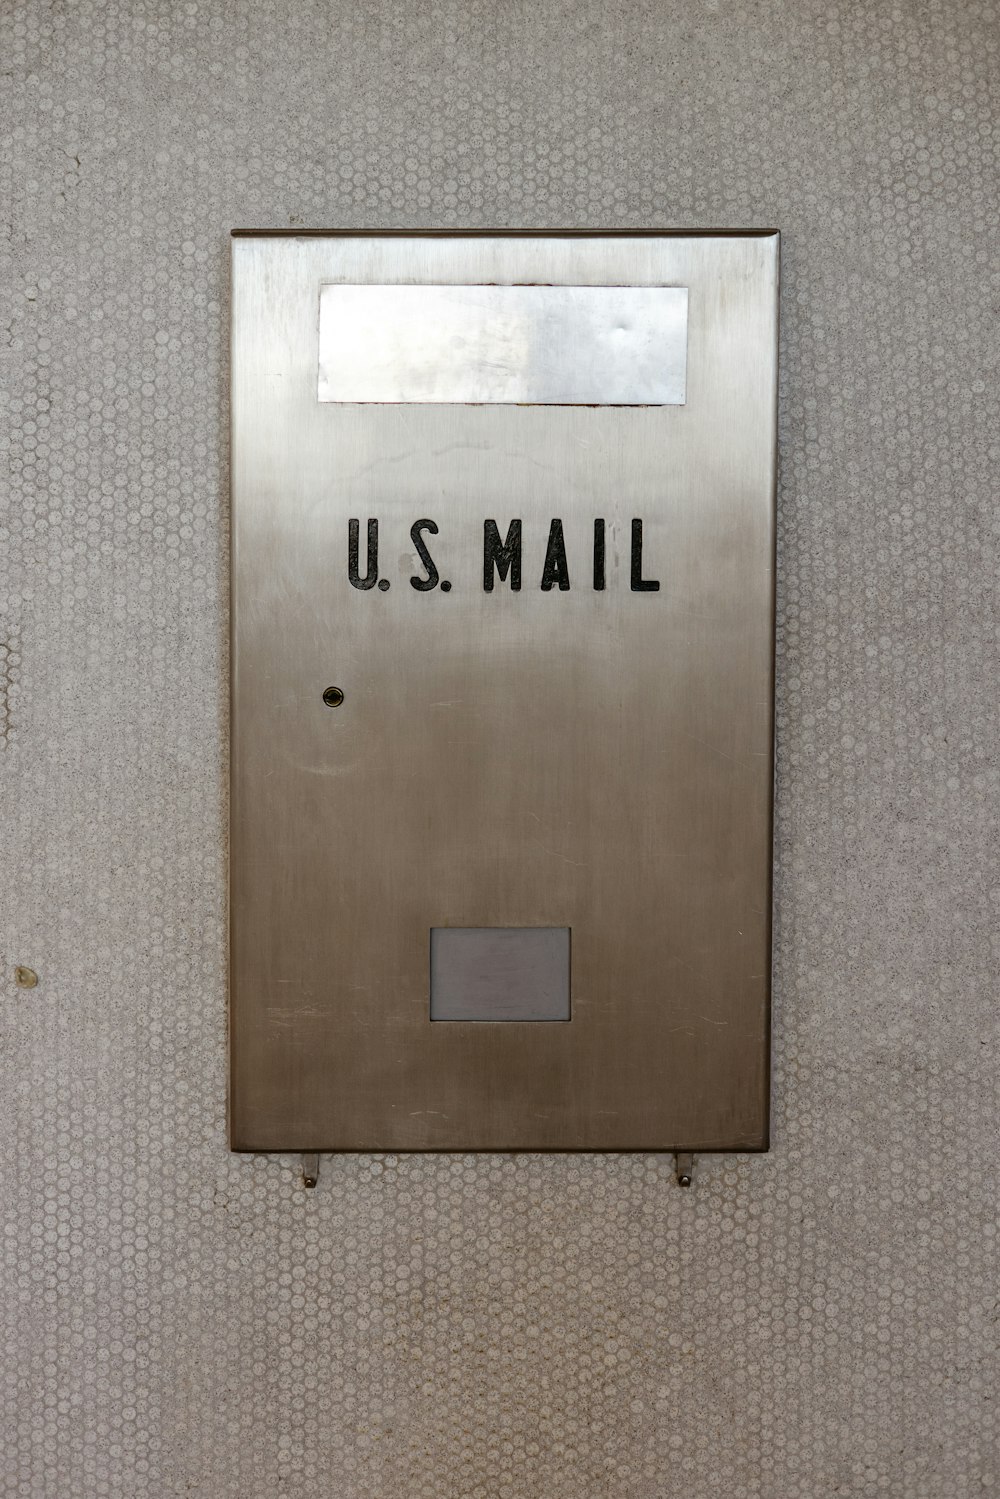 米国の郵便物が書かれた金属製のメールボックス